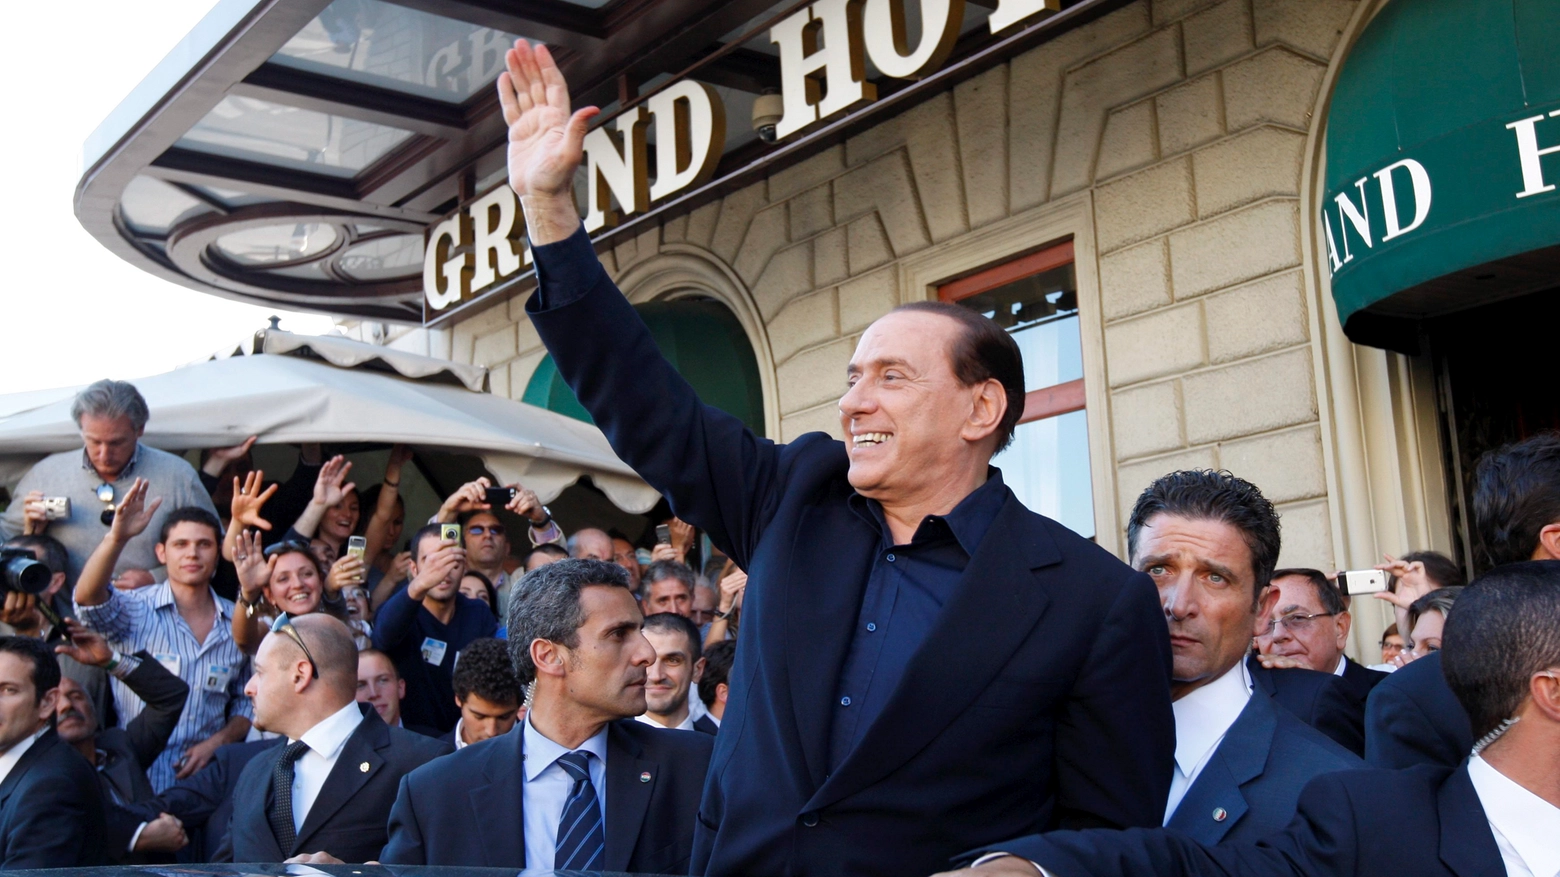 Il presidente Berlusconi in visita a Firenze nel 2009 (Foto Germogli)